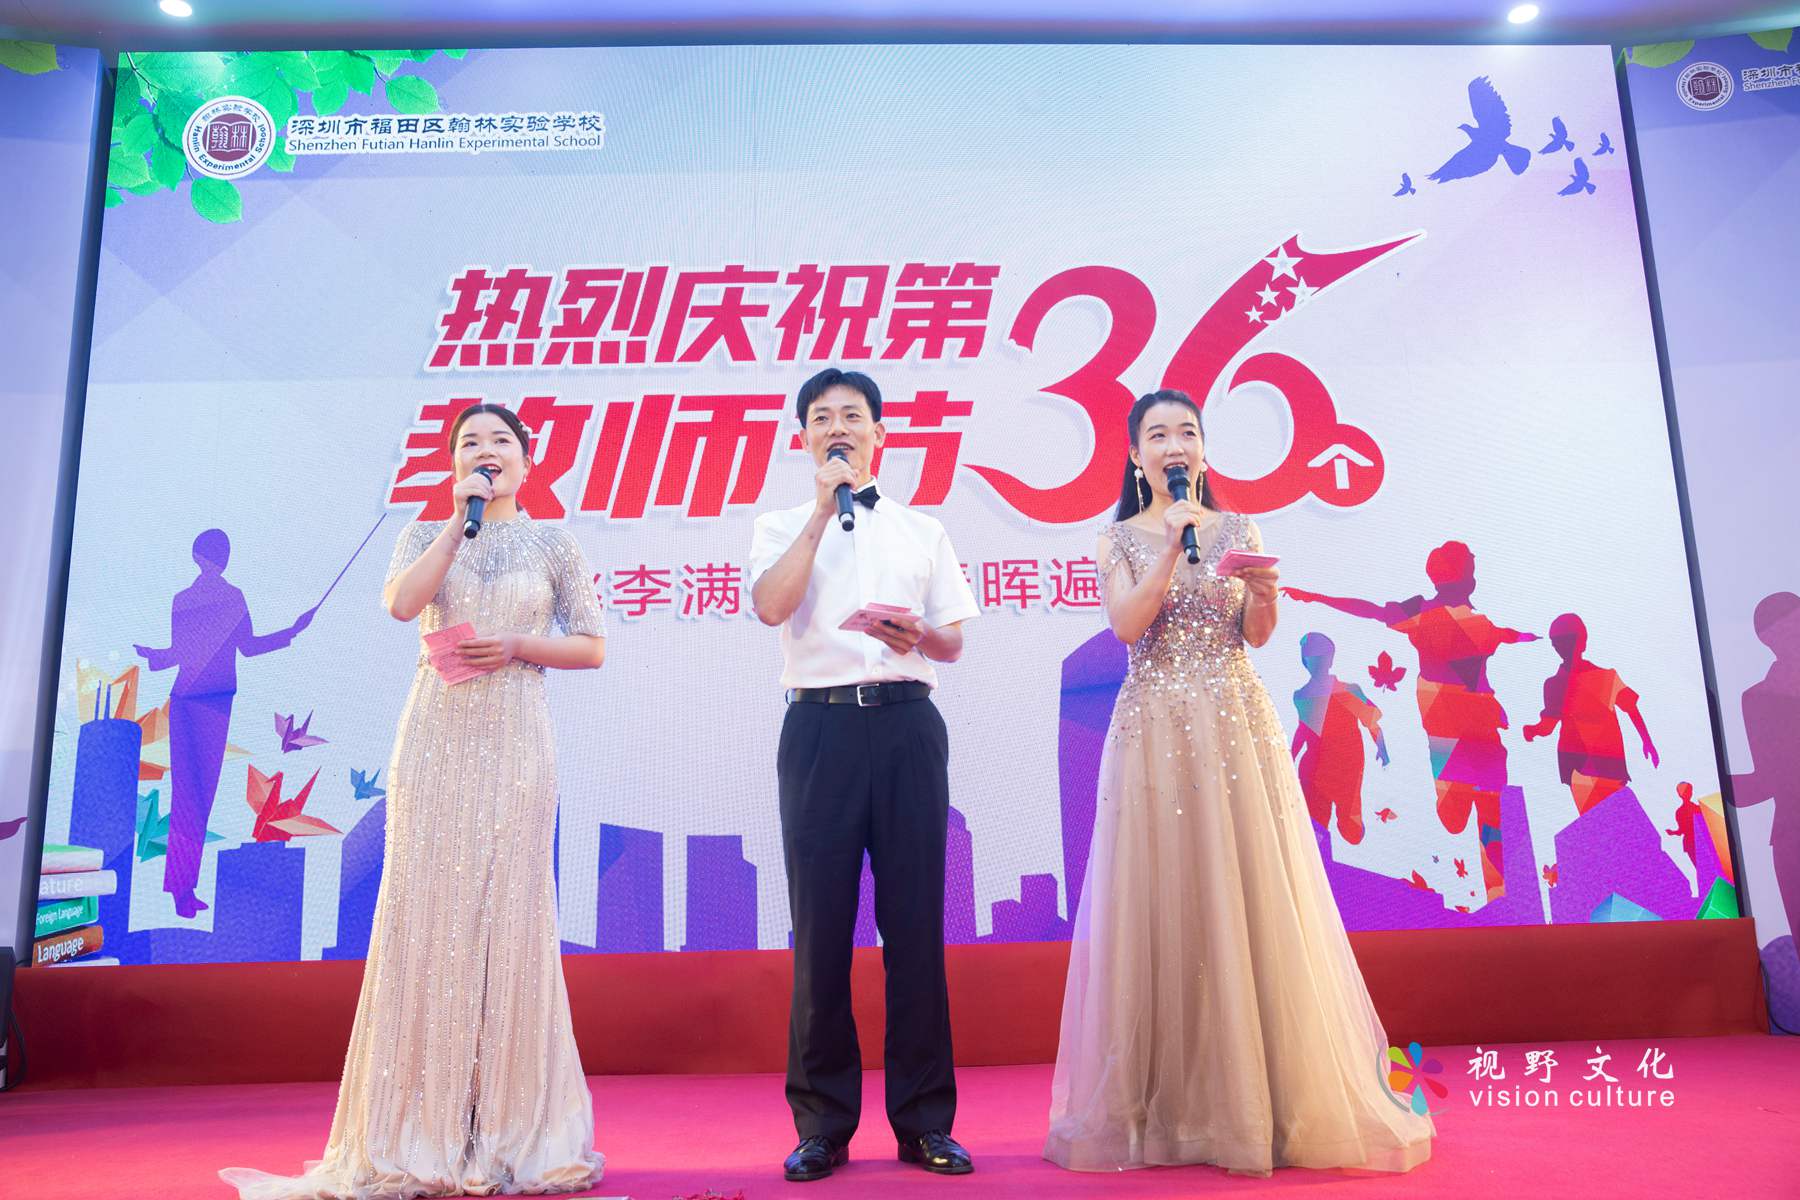 深圳市福田区翰林实验学校庆祝第36个教师节教师